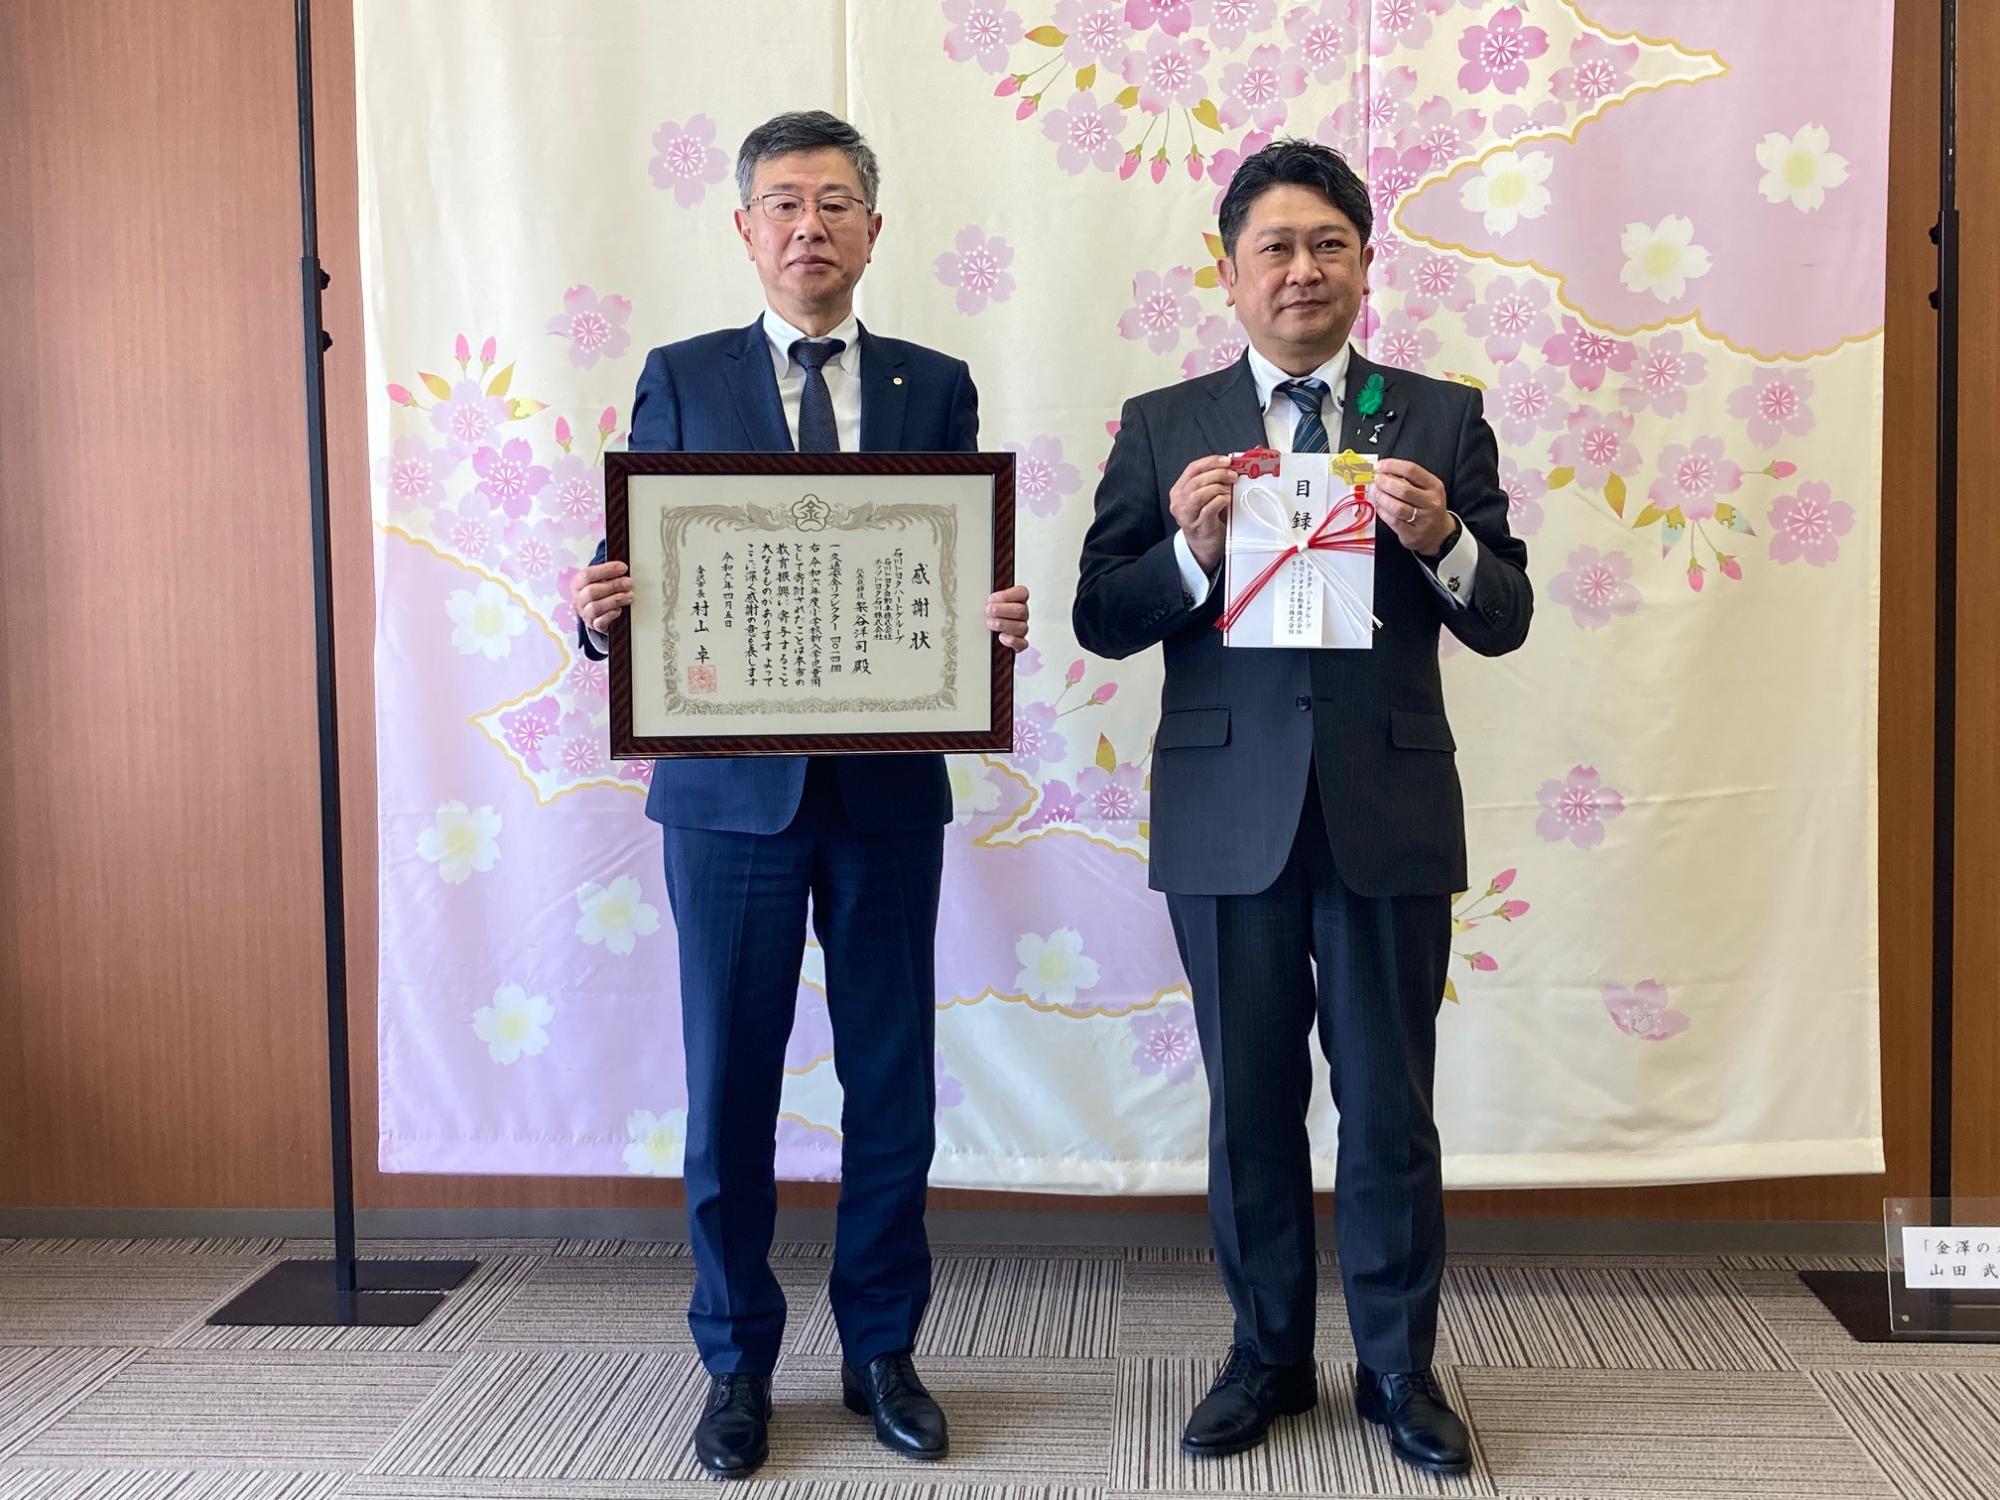 石川トヨタハートグループ様と市長の写真